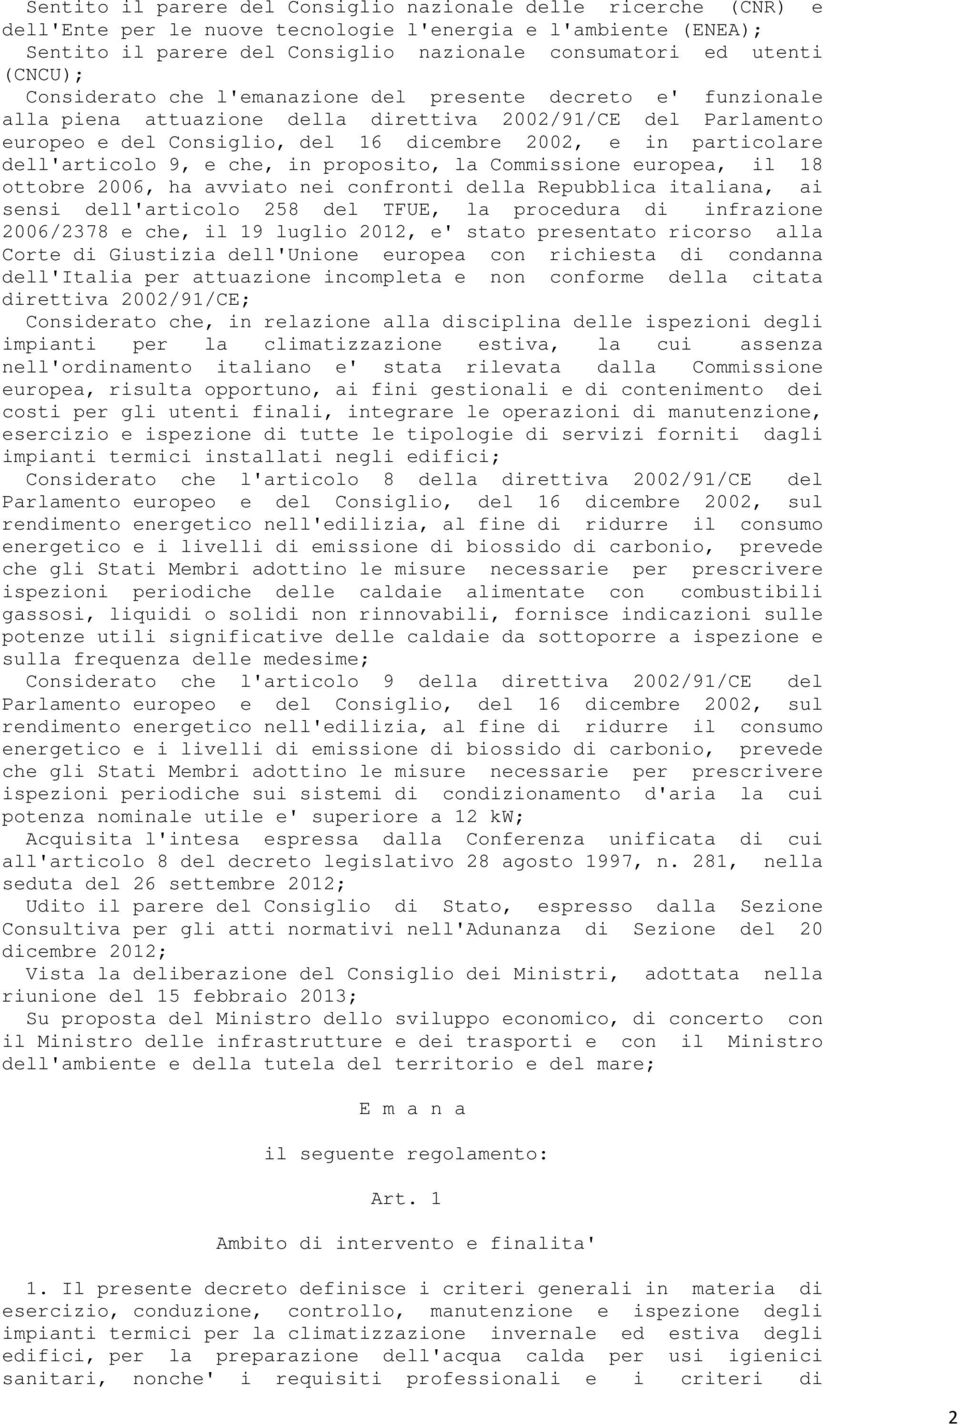 dell'articolo 9, e che, in proposito, la Commissione europea, il 18 ottobre 2006, ha avviato nei confronti della Repubblica italiana, ai sensi dell'articolo 258 del TFUE, la procedura di infrazione